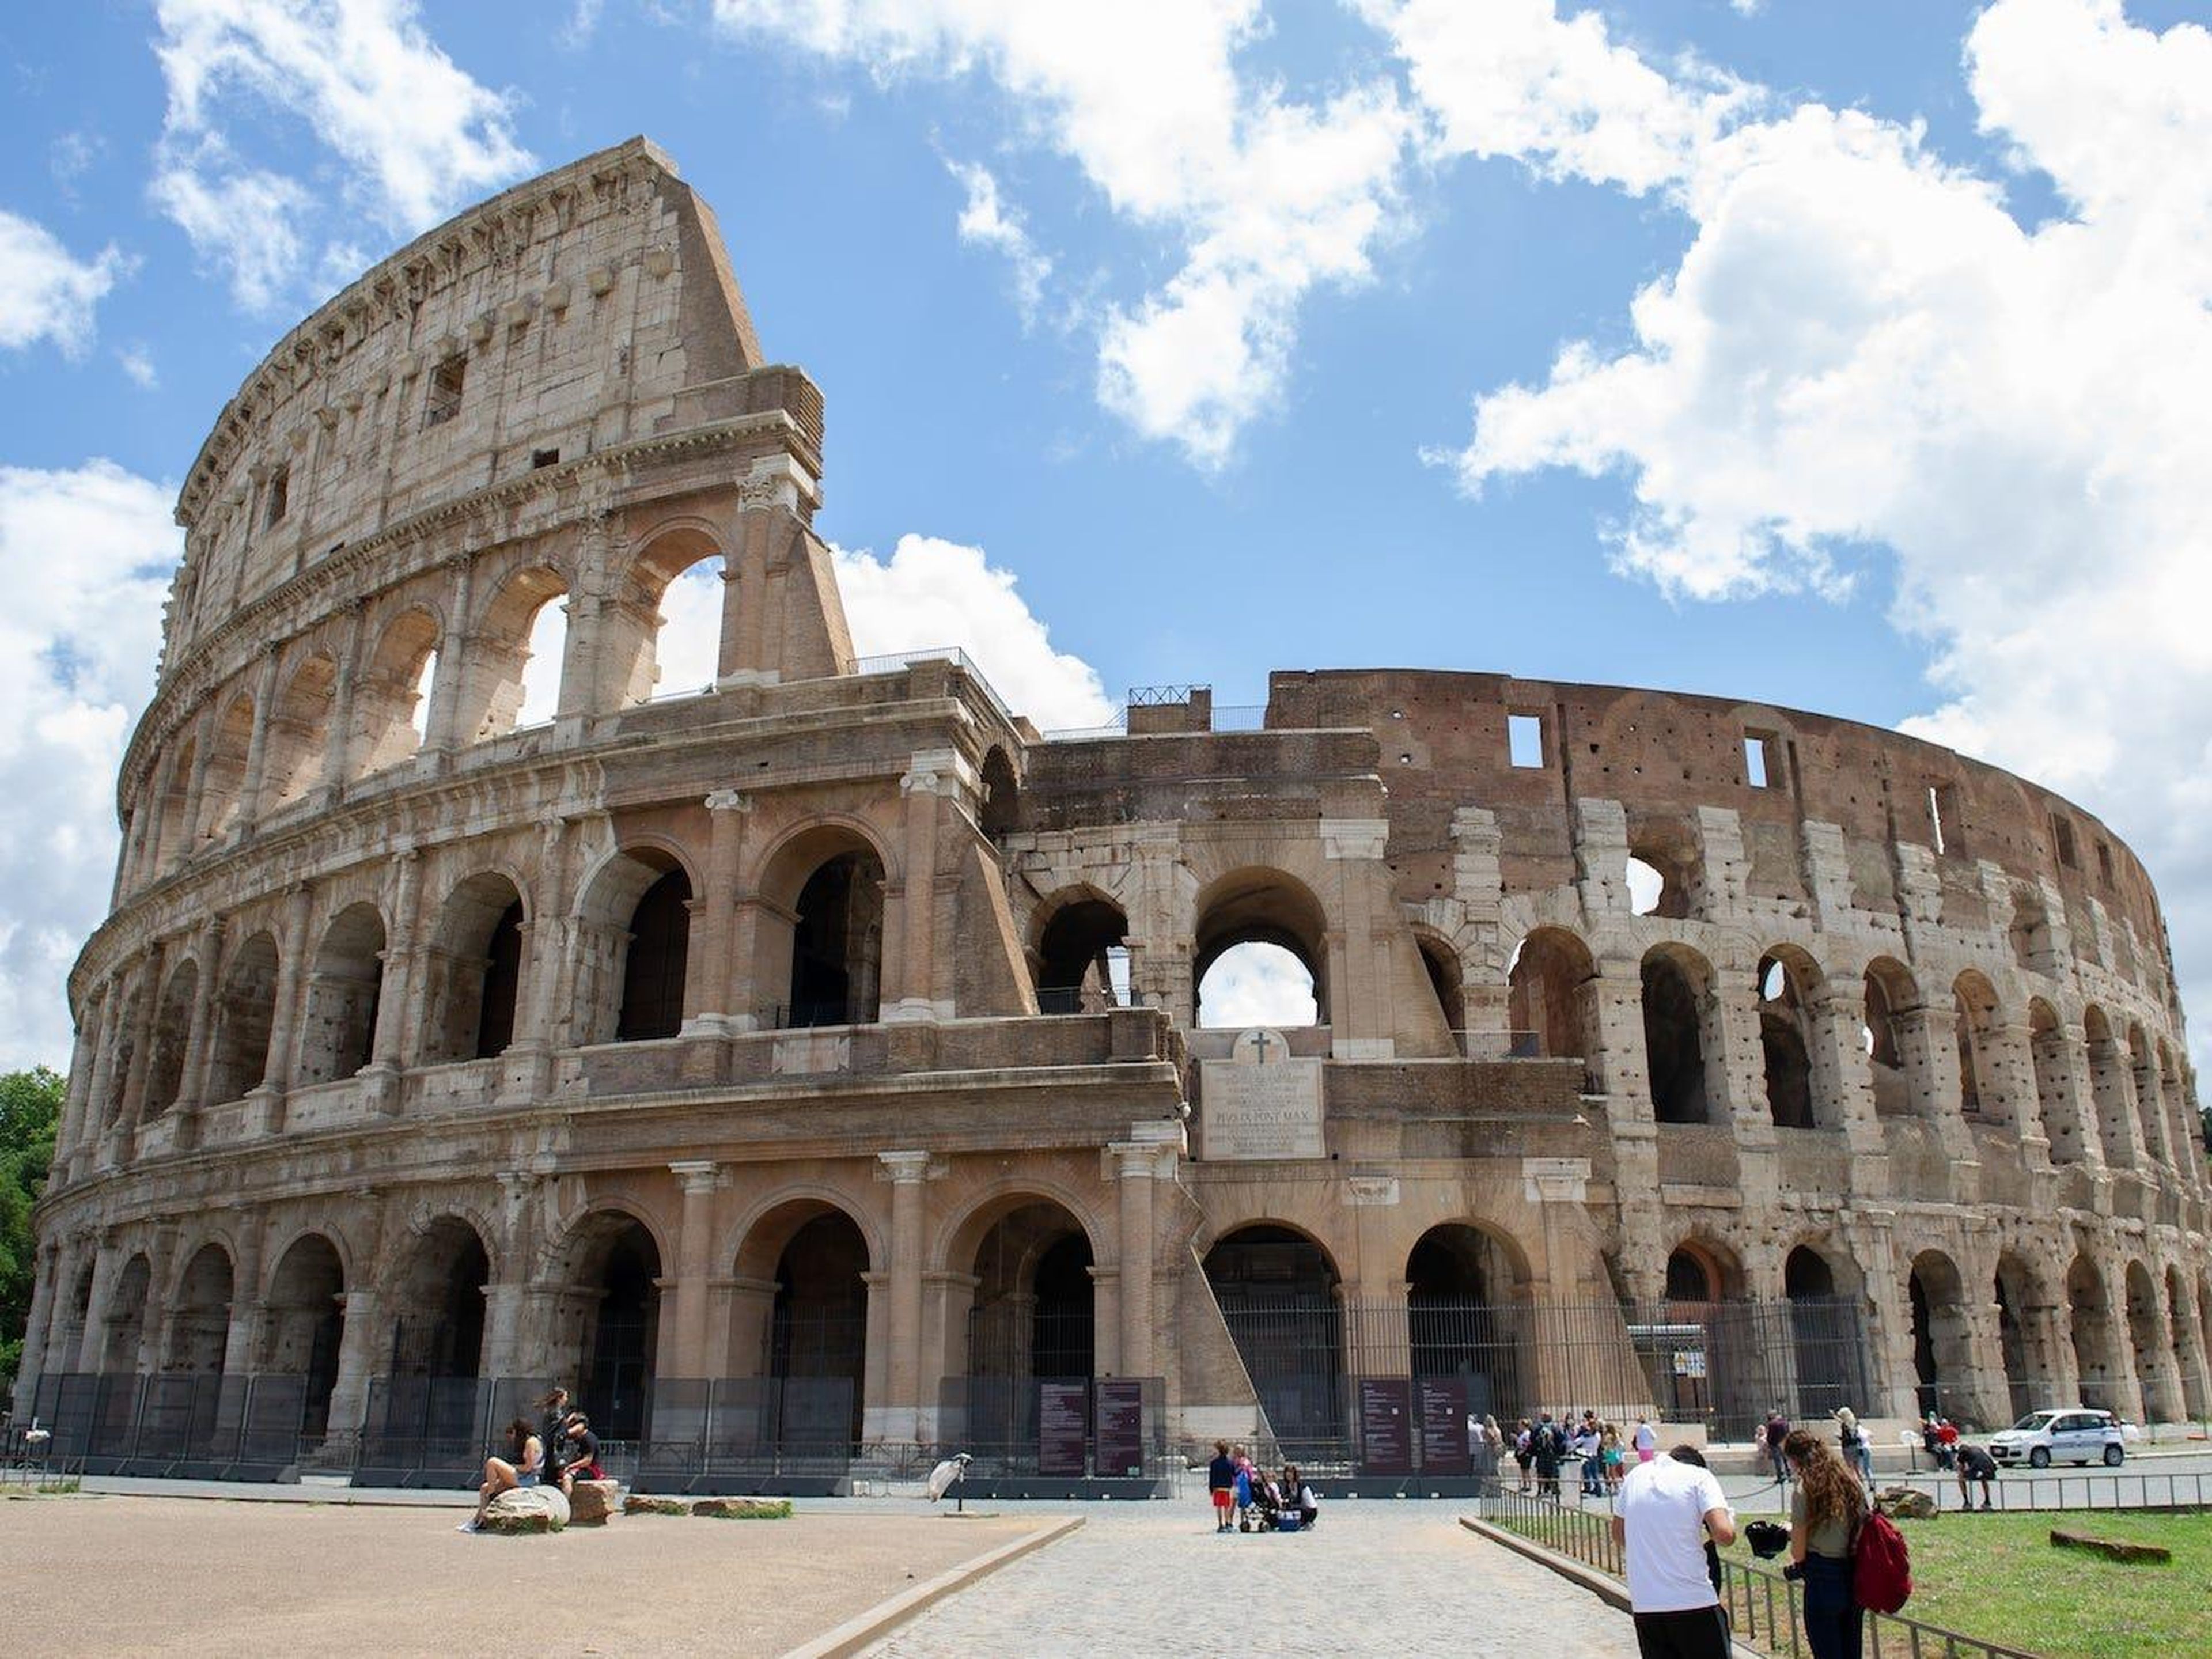 Vista general del monumento del Coliseo en Roma, Italia, el 10 de junio de 2020.